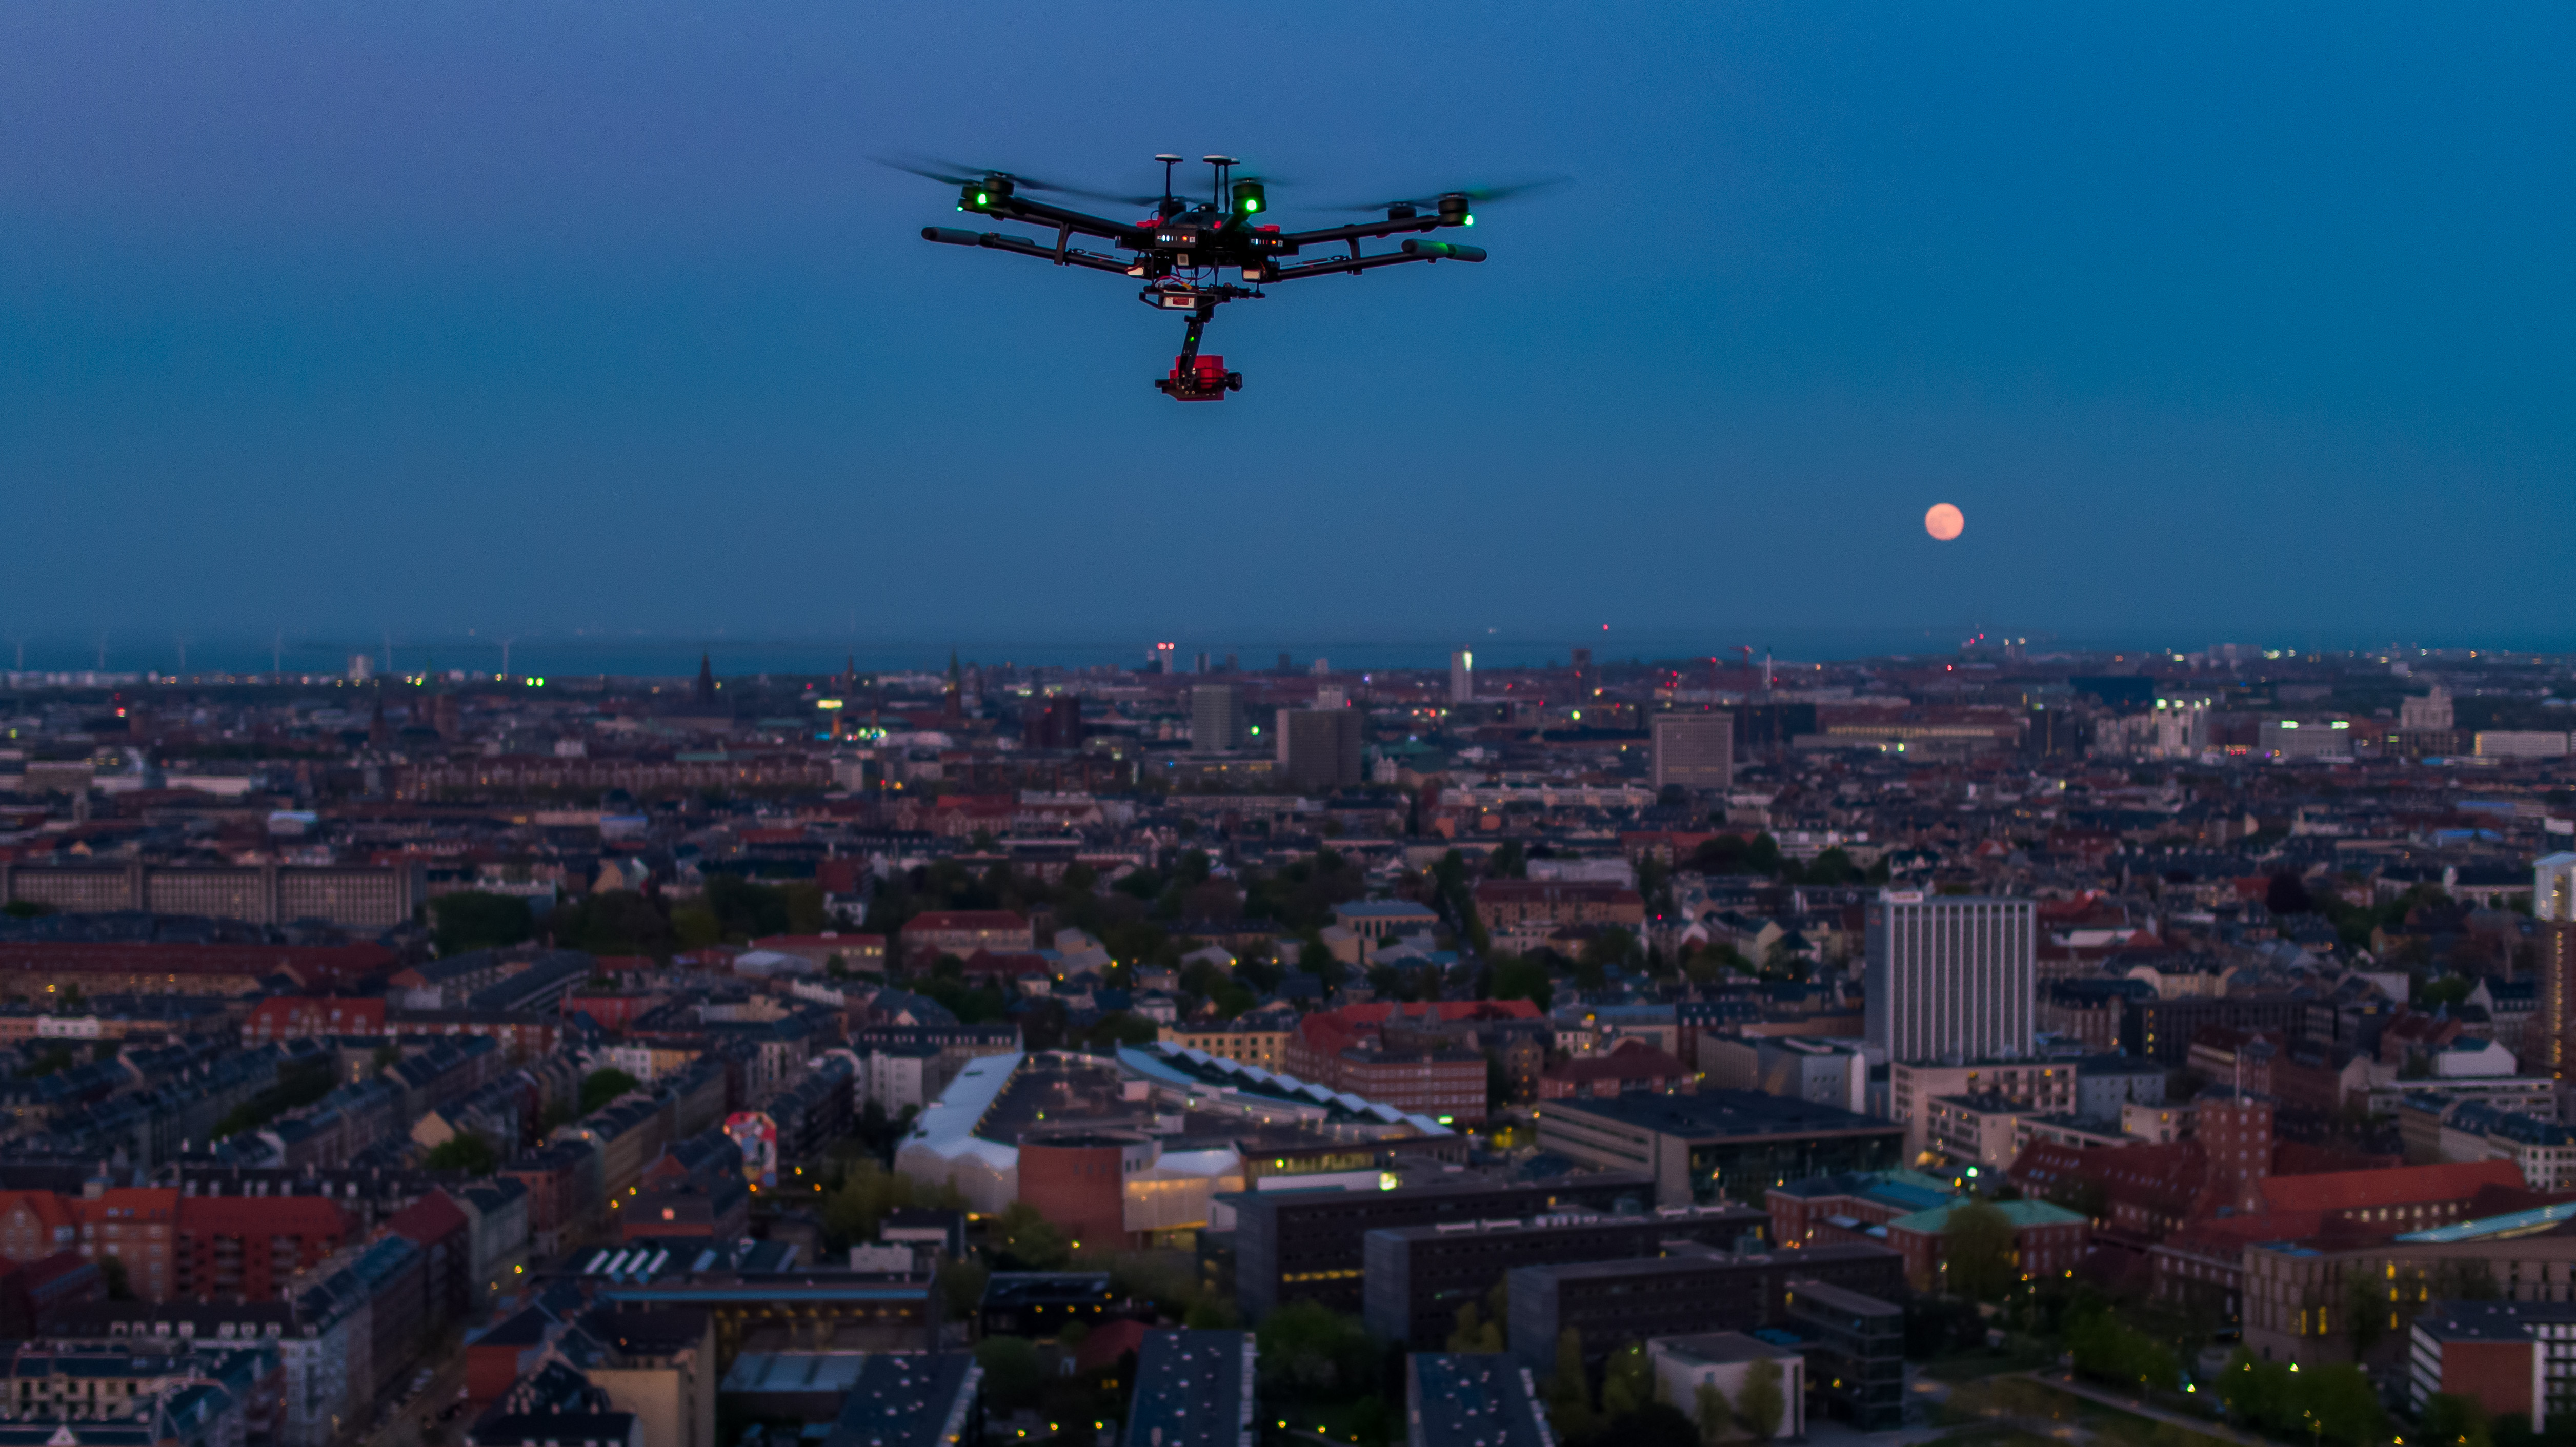 Fjernvarmenettet i Ikast skal termograferes fra luften af en drone. Foto: Drone Systems